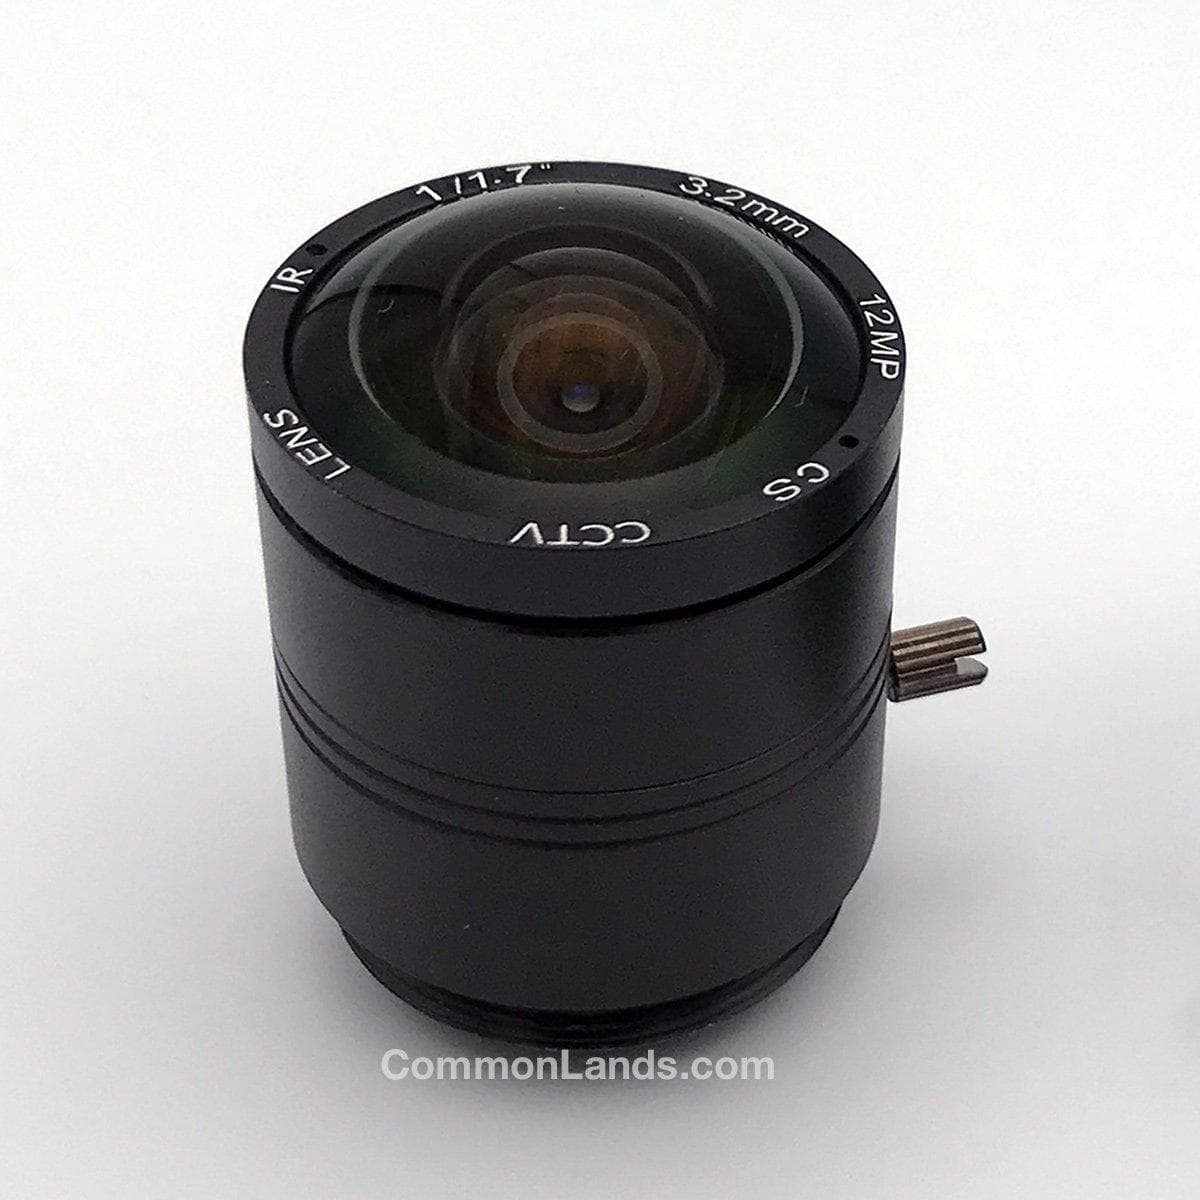 Ein 3,2-mm-CS-Mount-Objektiv für eine Überwachungskamera mit Weitwinkelobjektiv